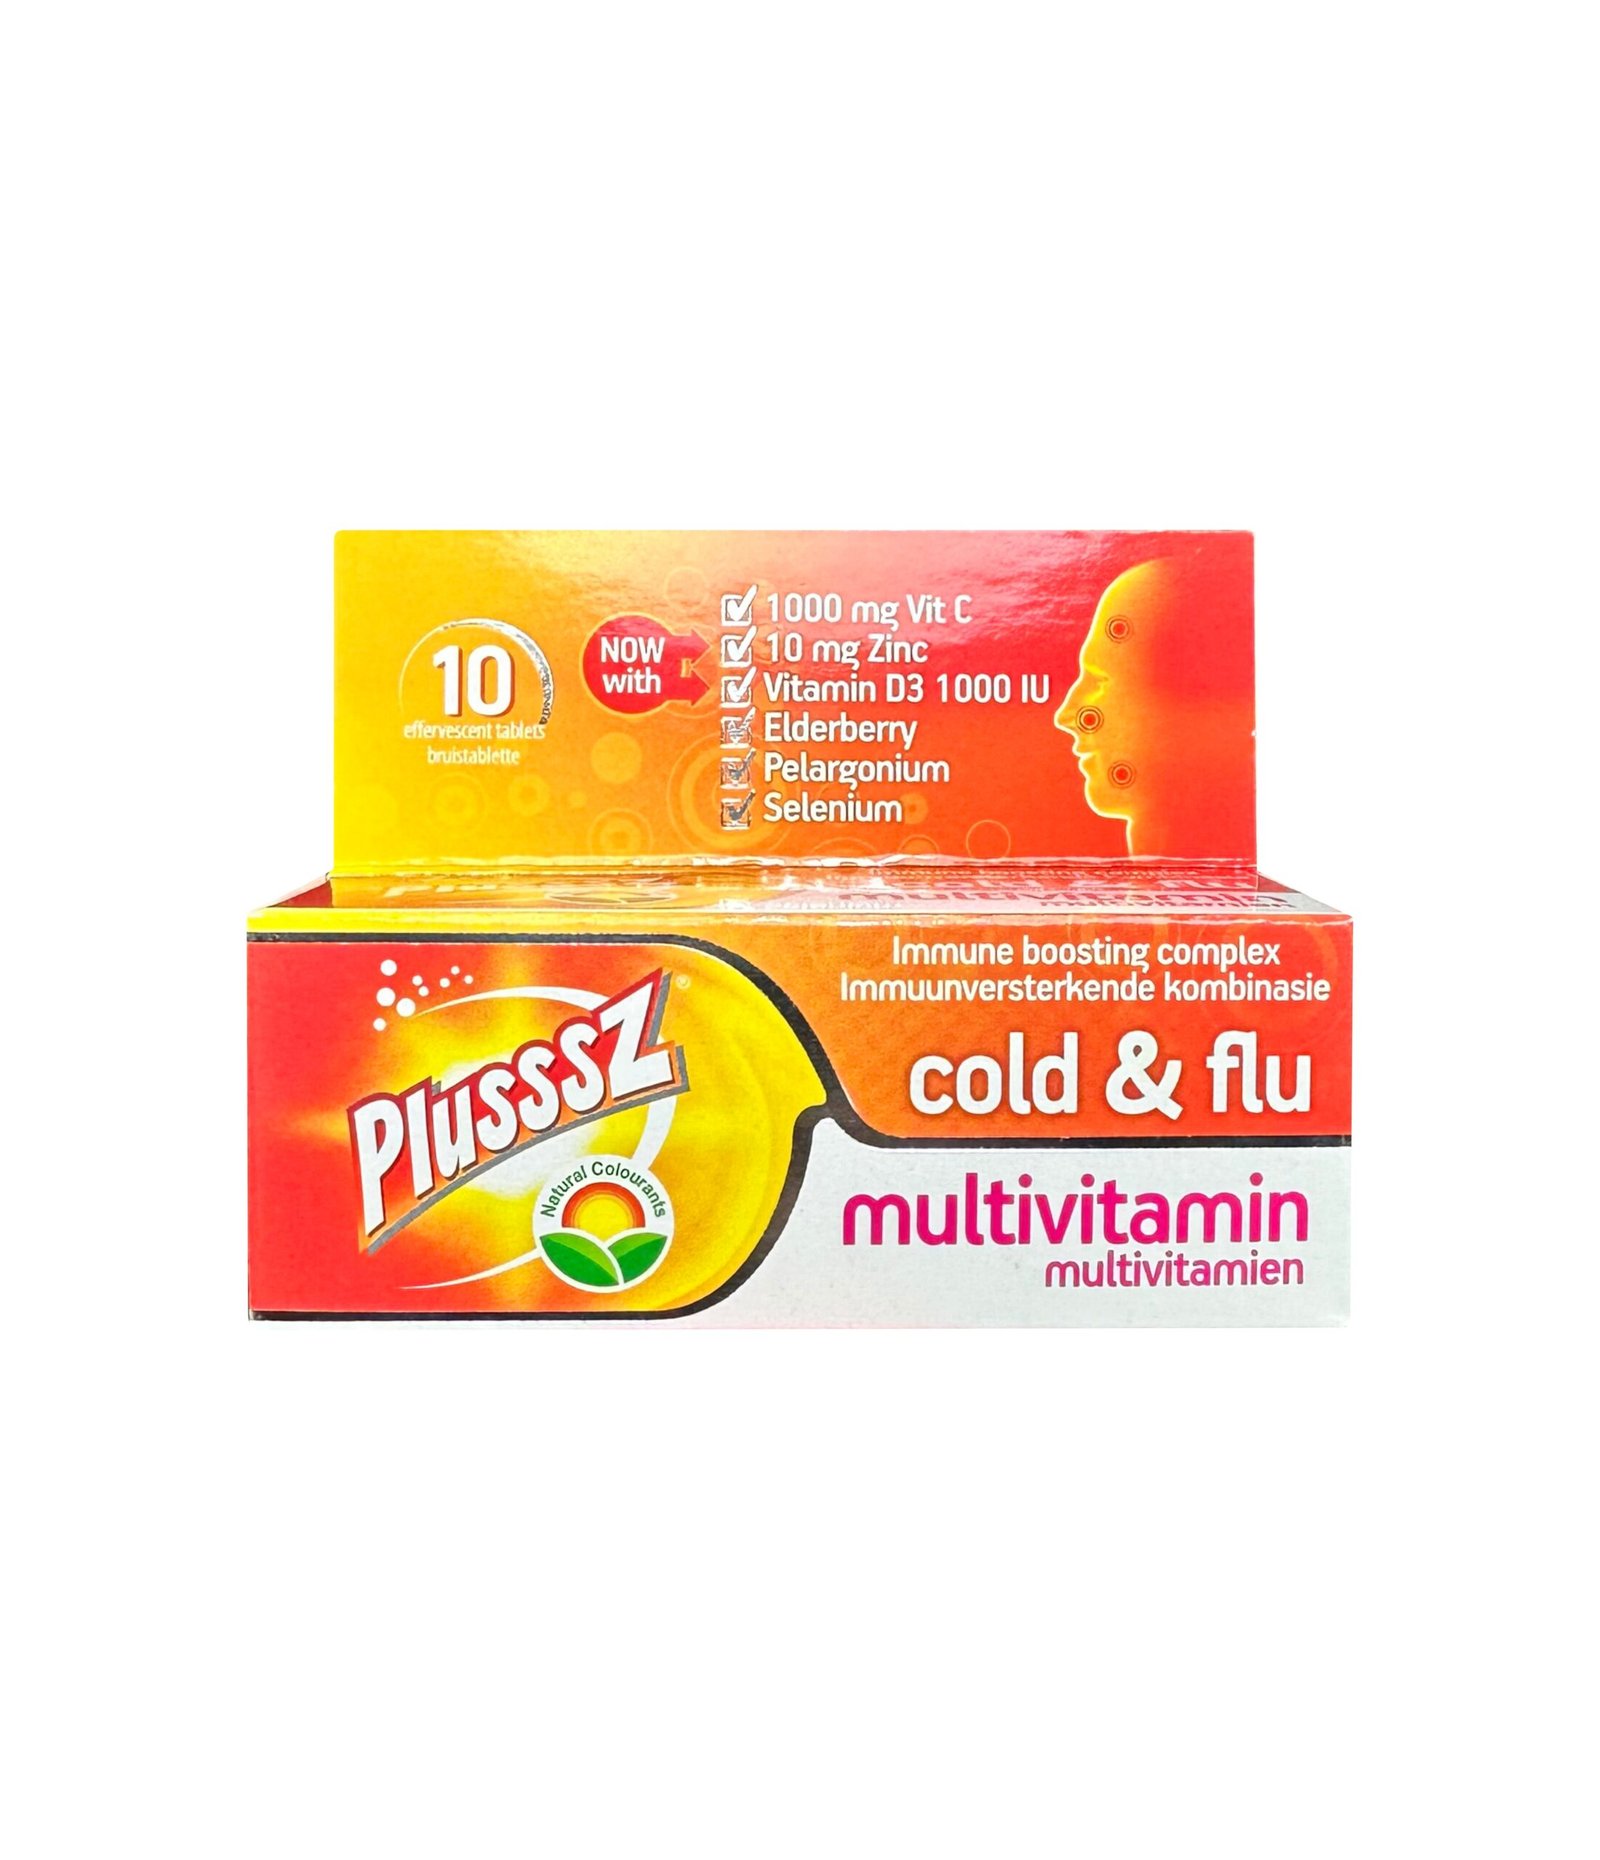 Plusssz For Cold & Flu